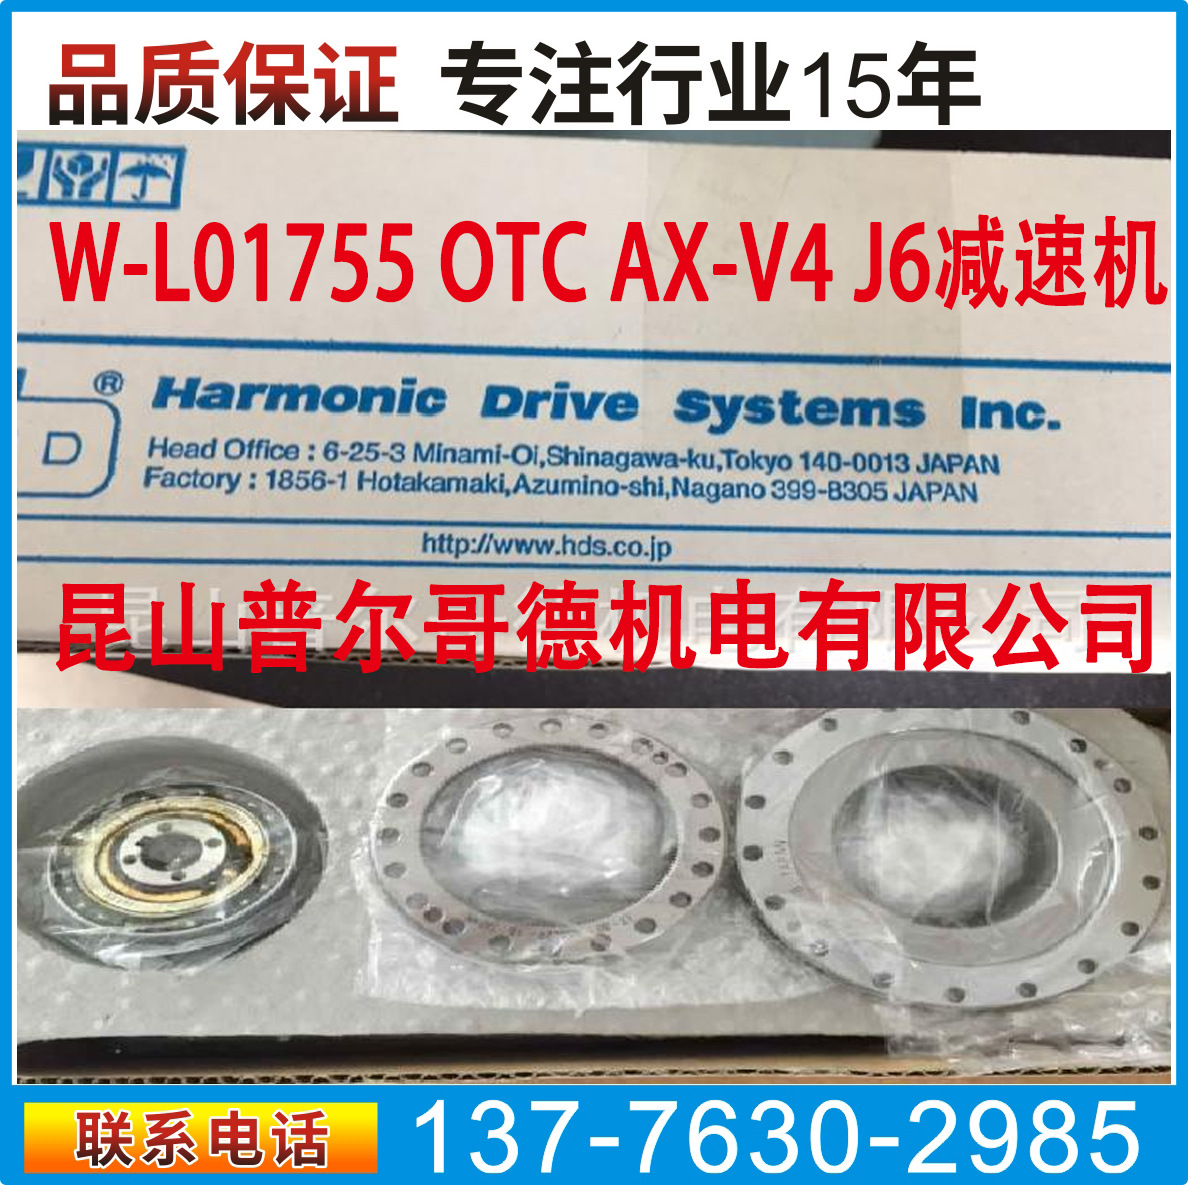 OTC manipulator AX-V4 J6 Reducer W-L01755 | OTC Robot 6 Reducer 5096-624